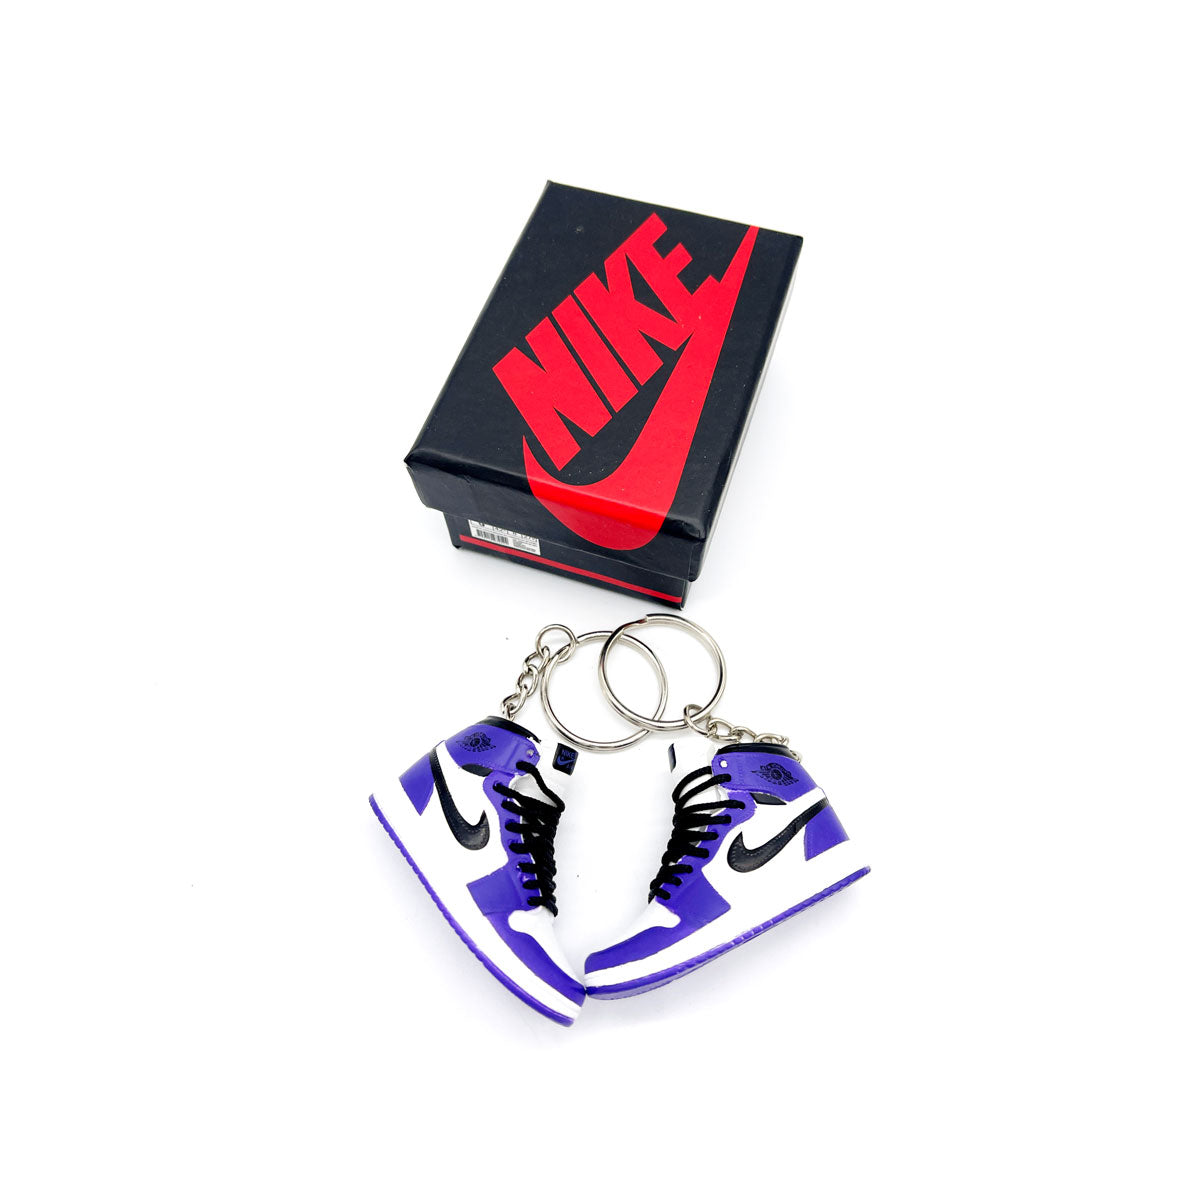 3D Sneaker Keychain - Air Jordan 1 High Court Purple 2.0 Pair - KickzStore